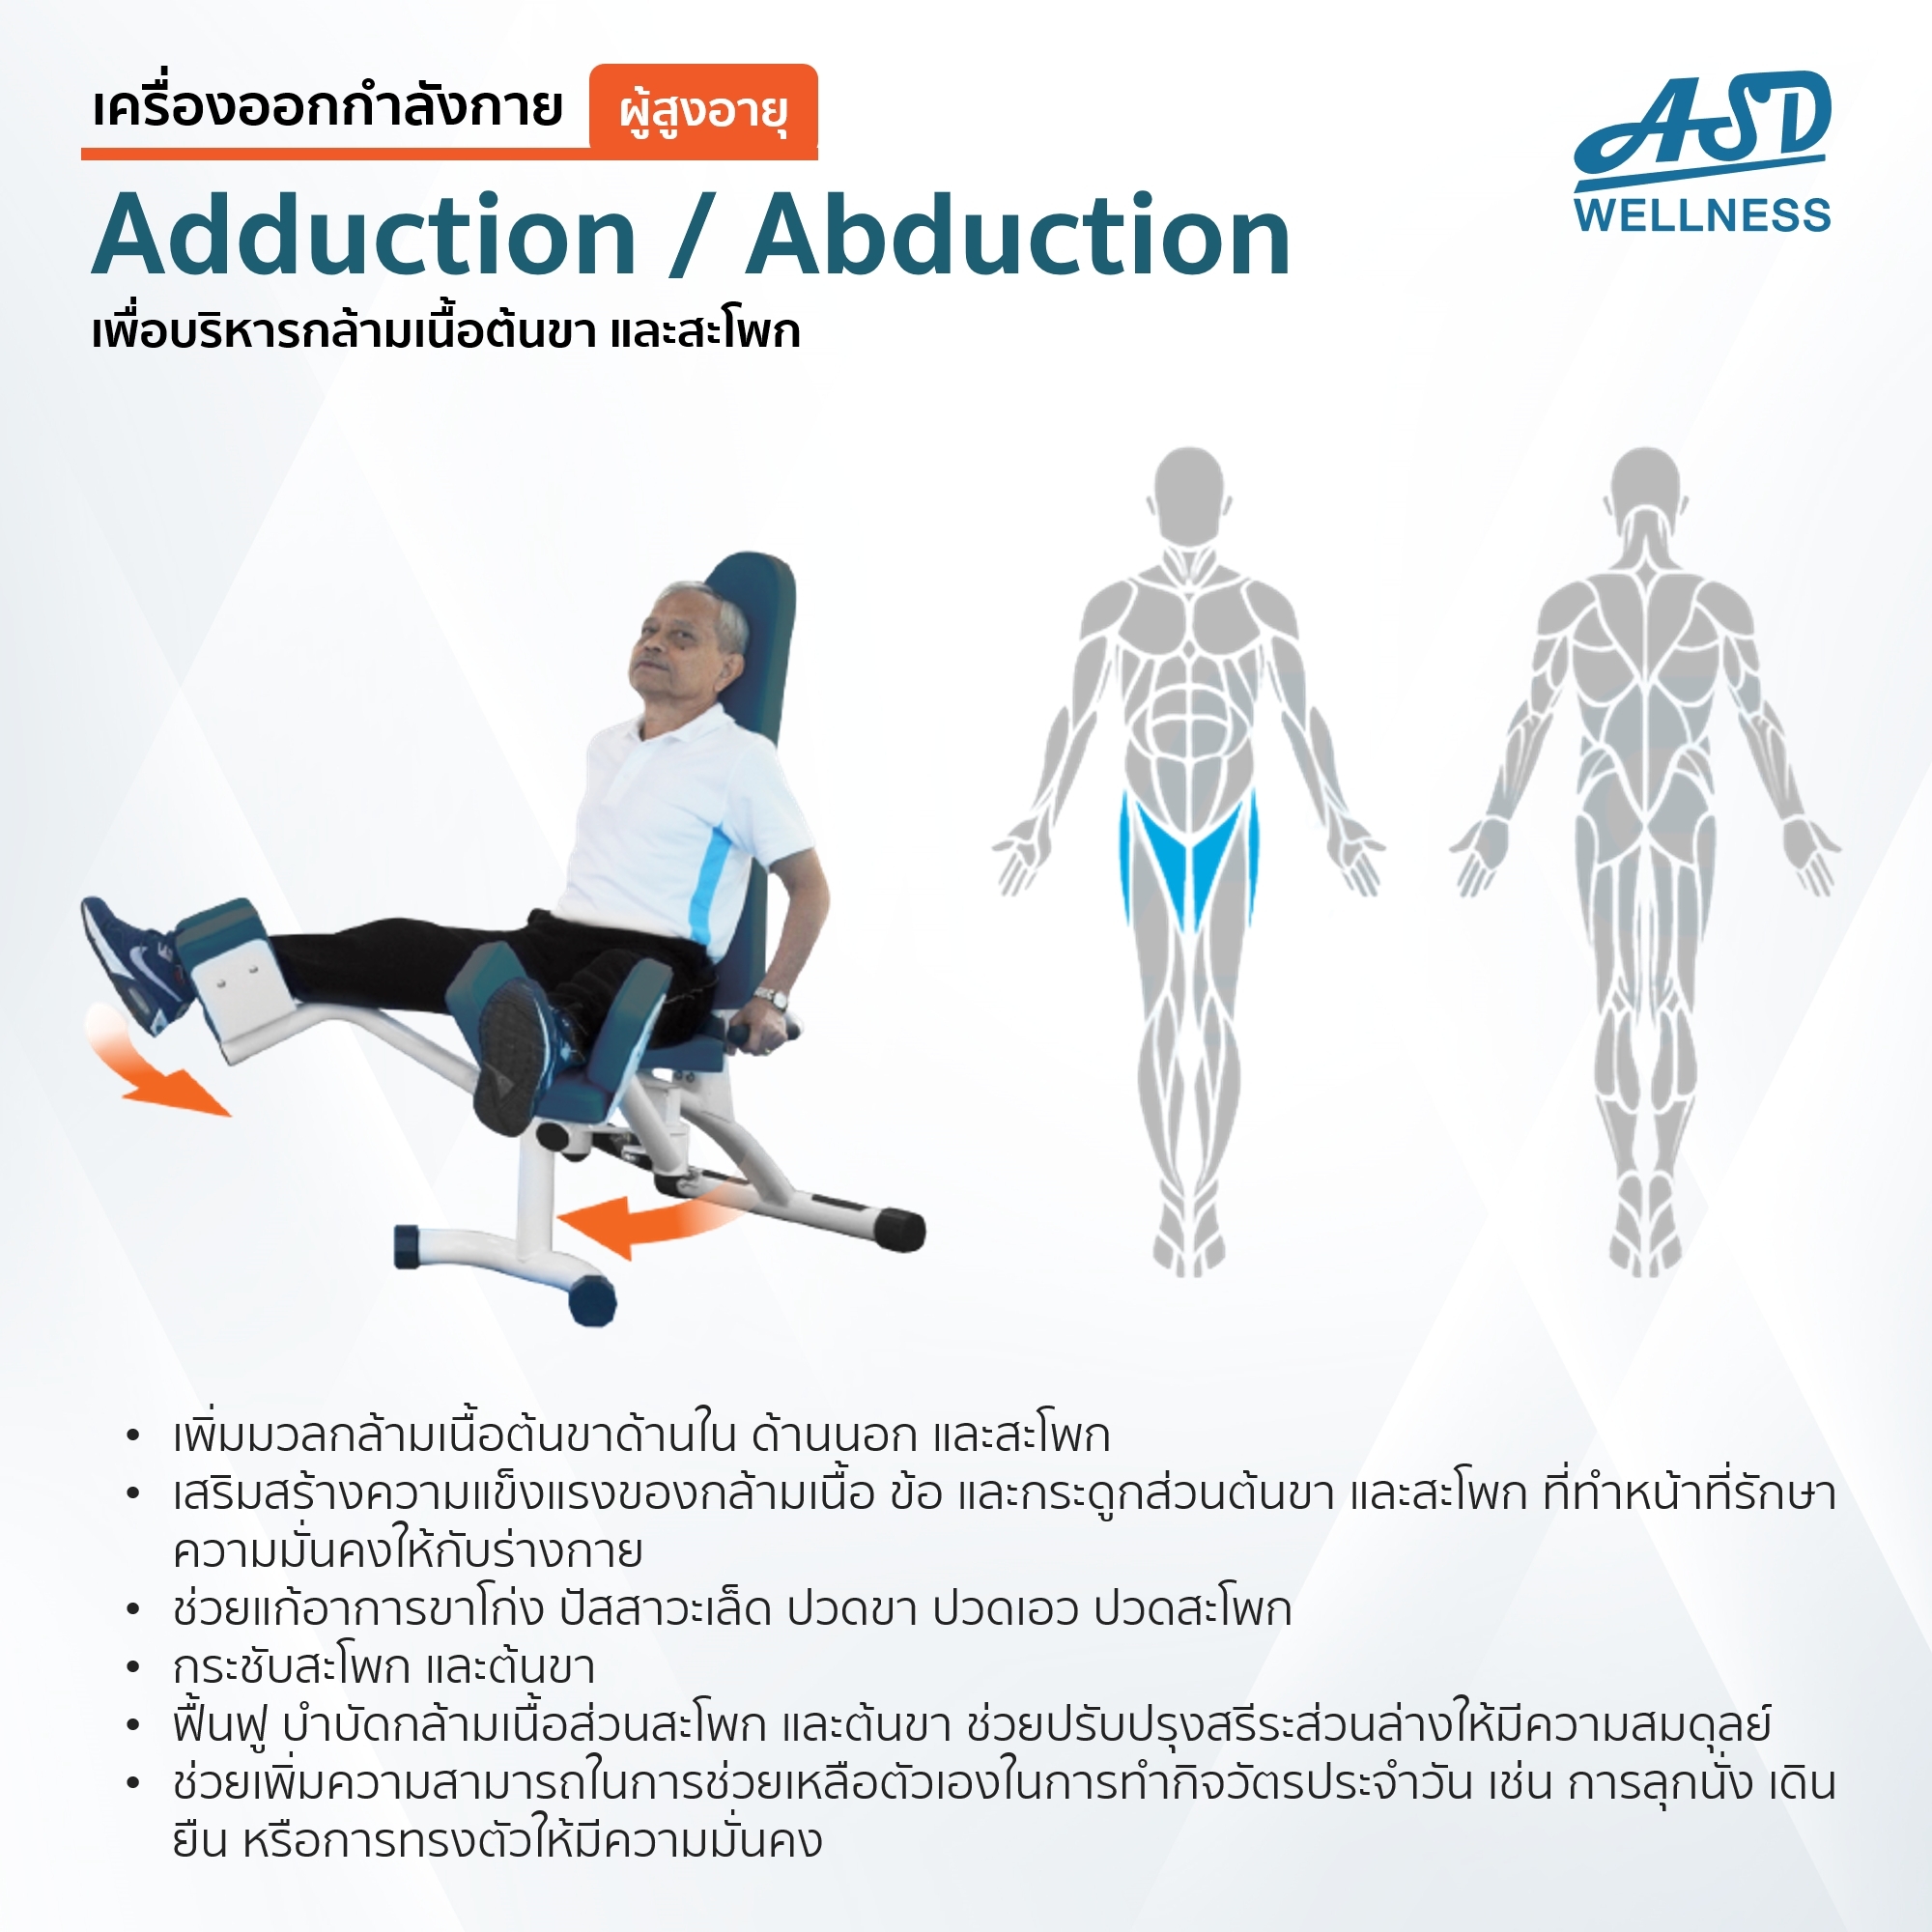 เครื่องออกกำลังกาย สำหรับผู้สูงอายุ เพื่อบริหารกล้ามเนื้อต้นขา และสะโพก Adduction / Abduction